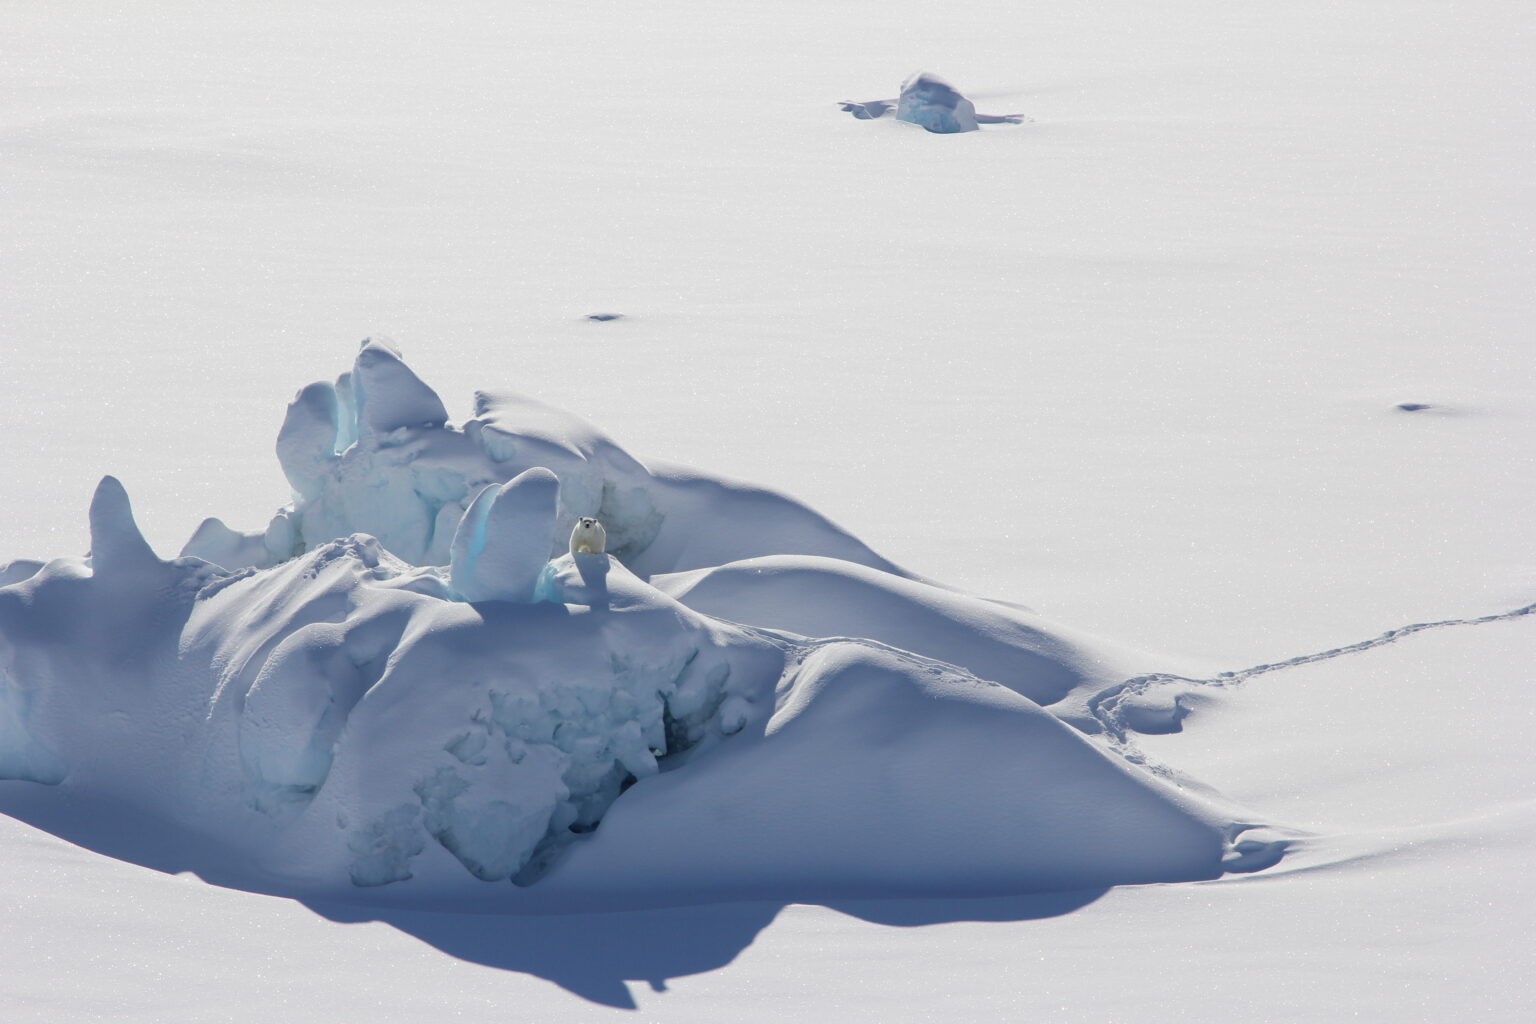 Urso polar fica em iceberg coberto de neve cercado por gelo marinho no sudeste da Groenlândia em março de 2016 (Foto: Kristin Laidre/University of Washington)